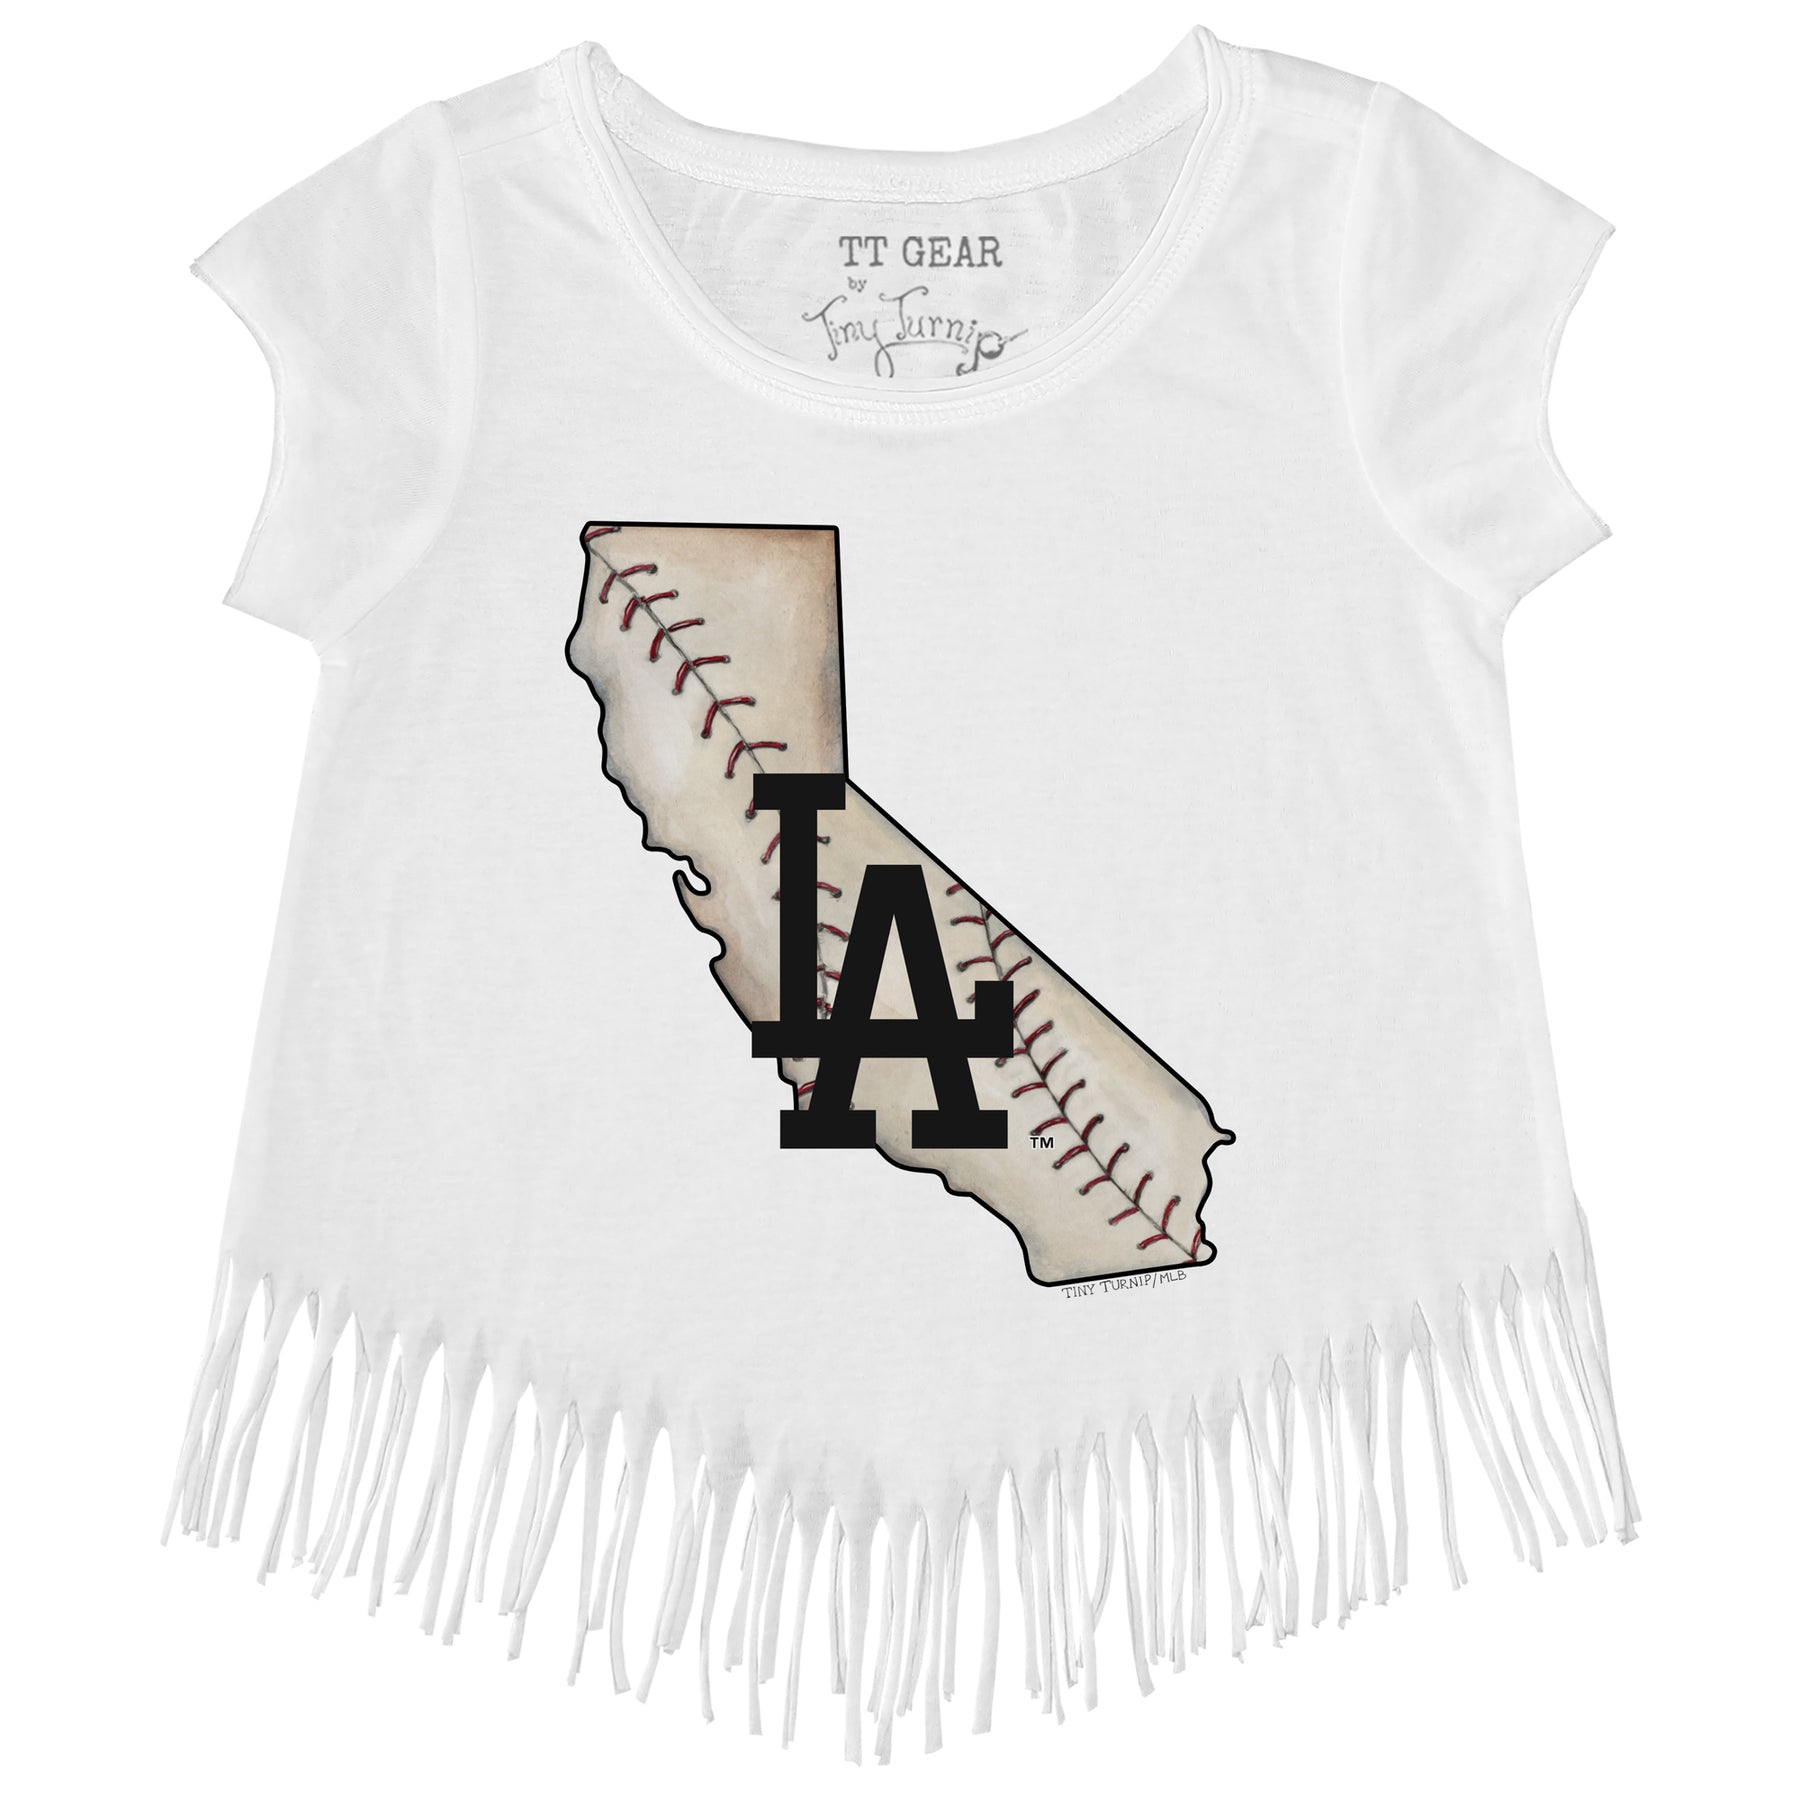 Toddler Tiny Turnip White Houston Astros Baseball Pow T-Shirt Size: 4T